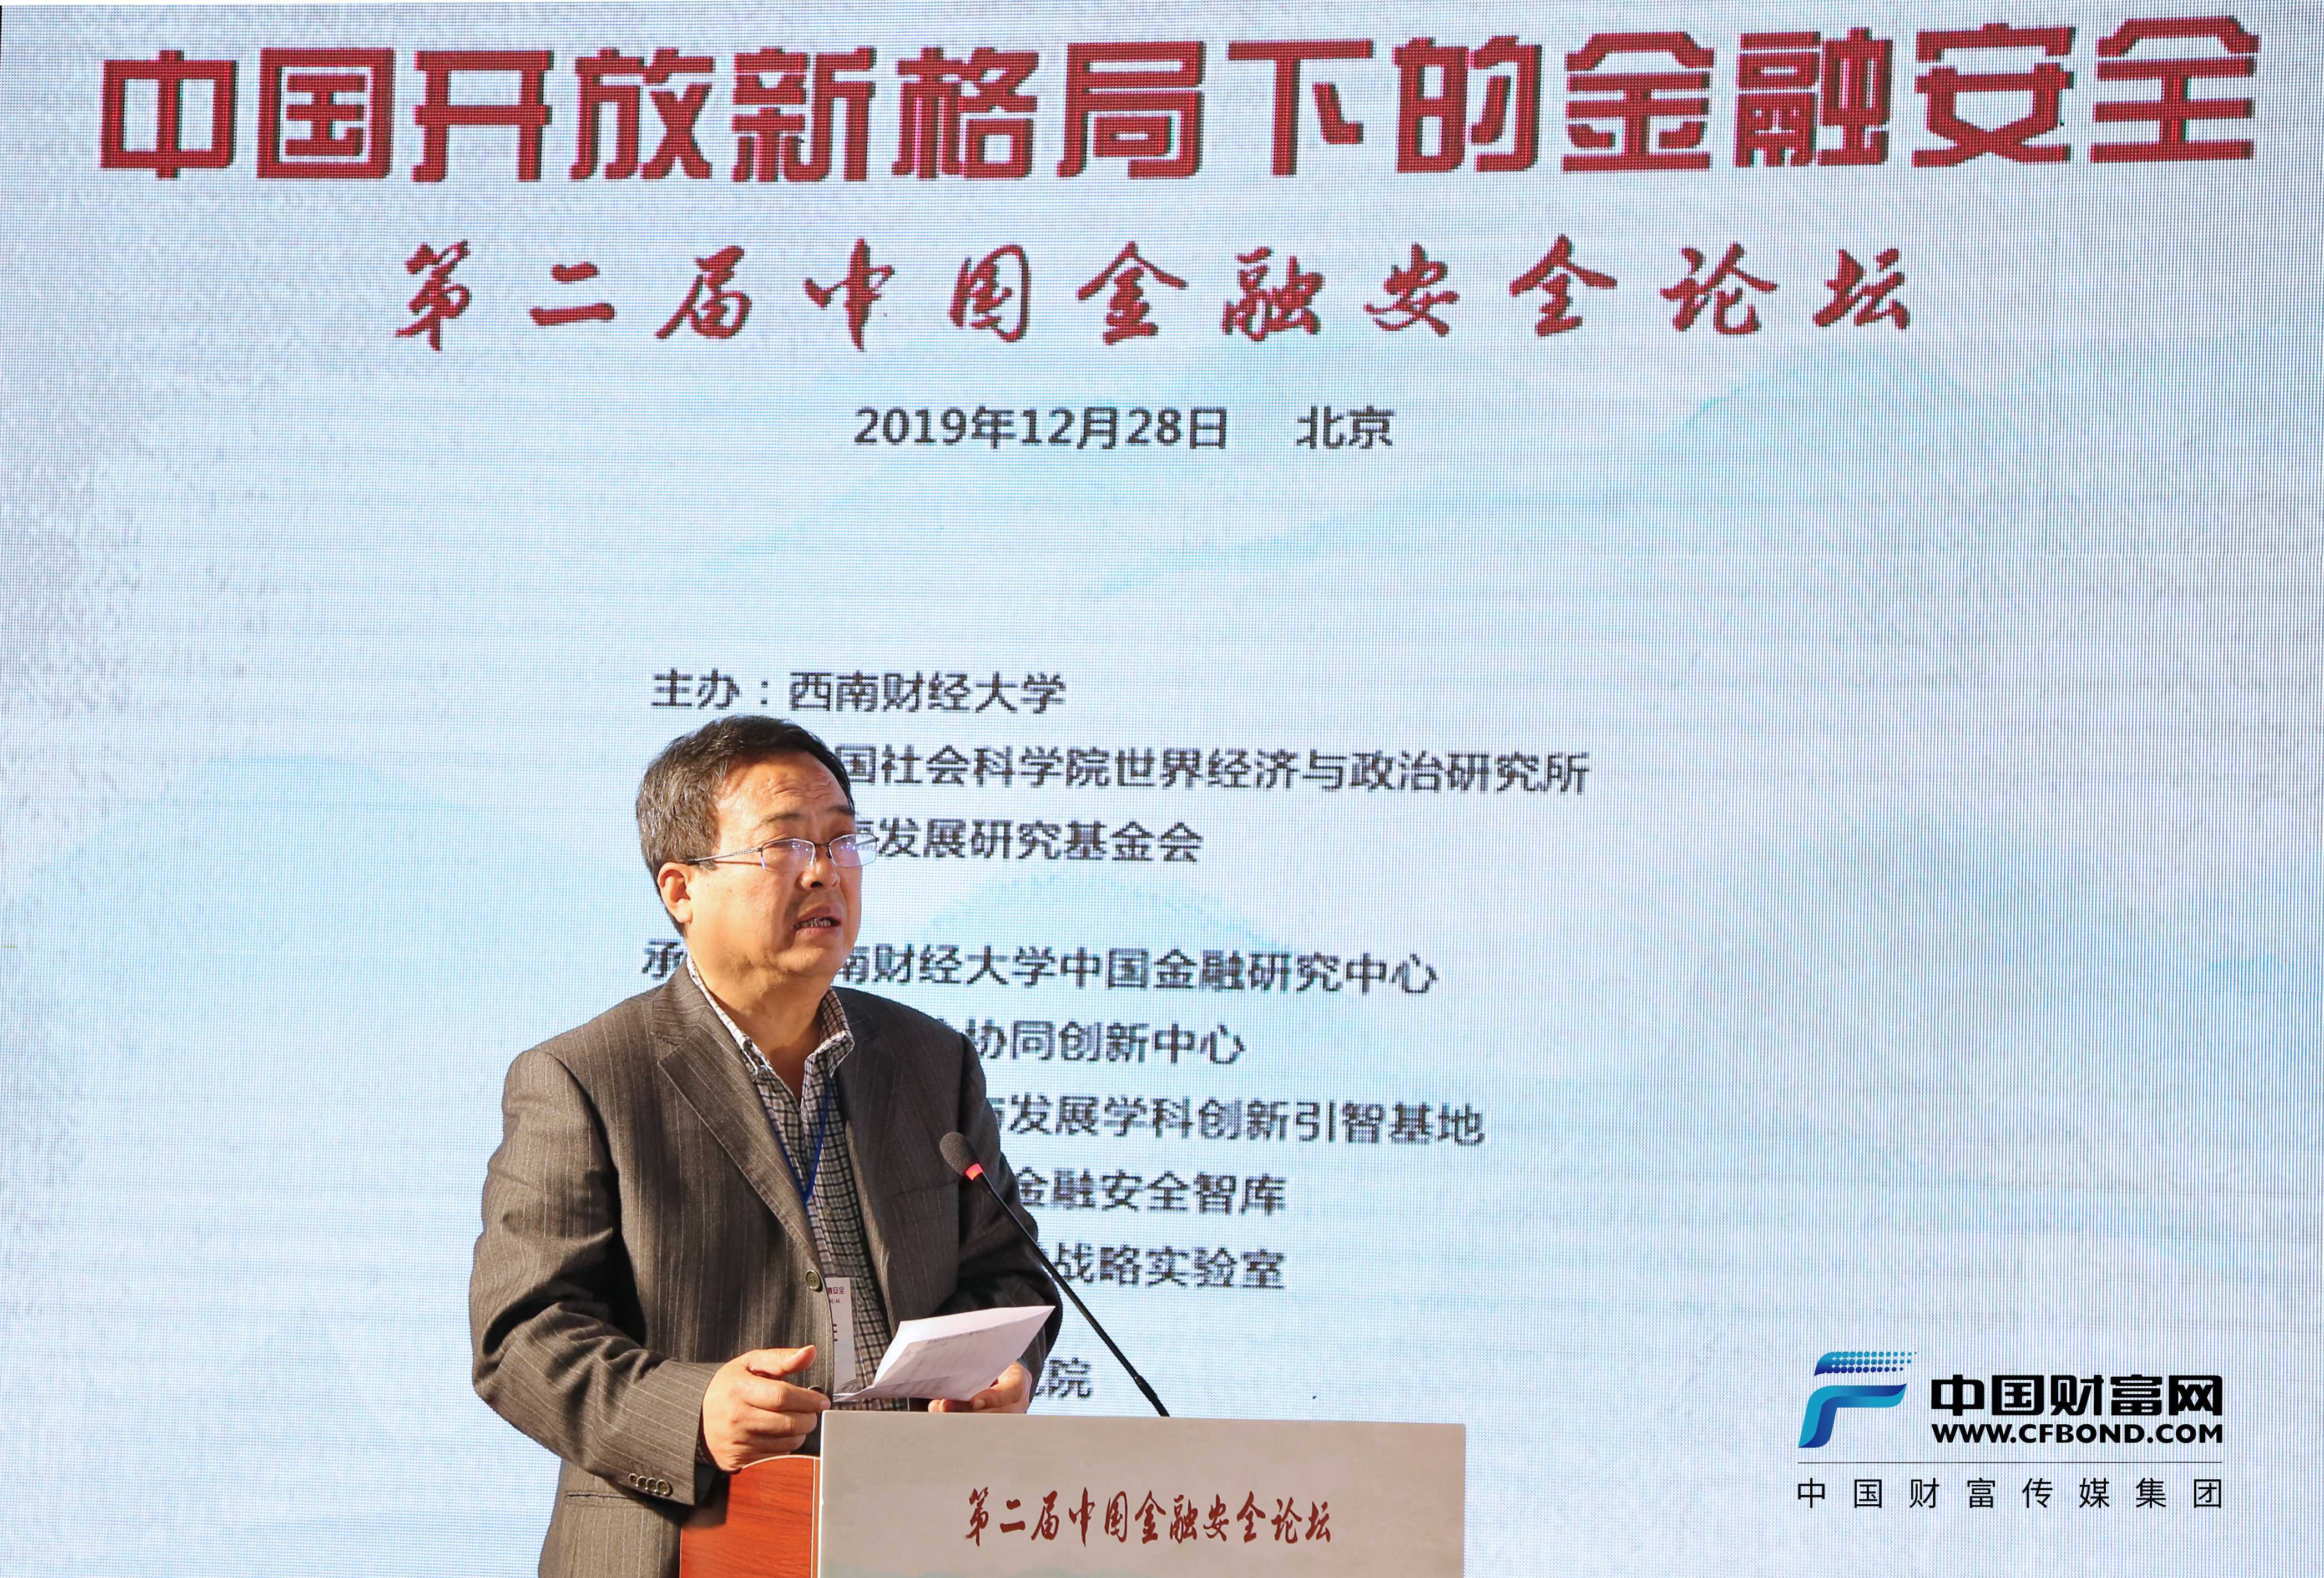 西南财经大学中国金融研究中心名誉主任刘锡良发言